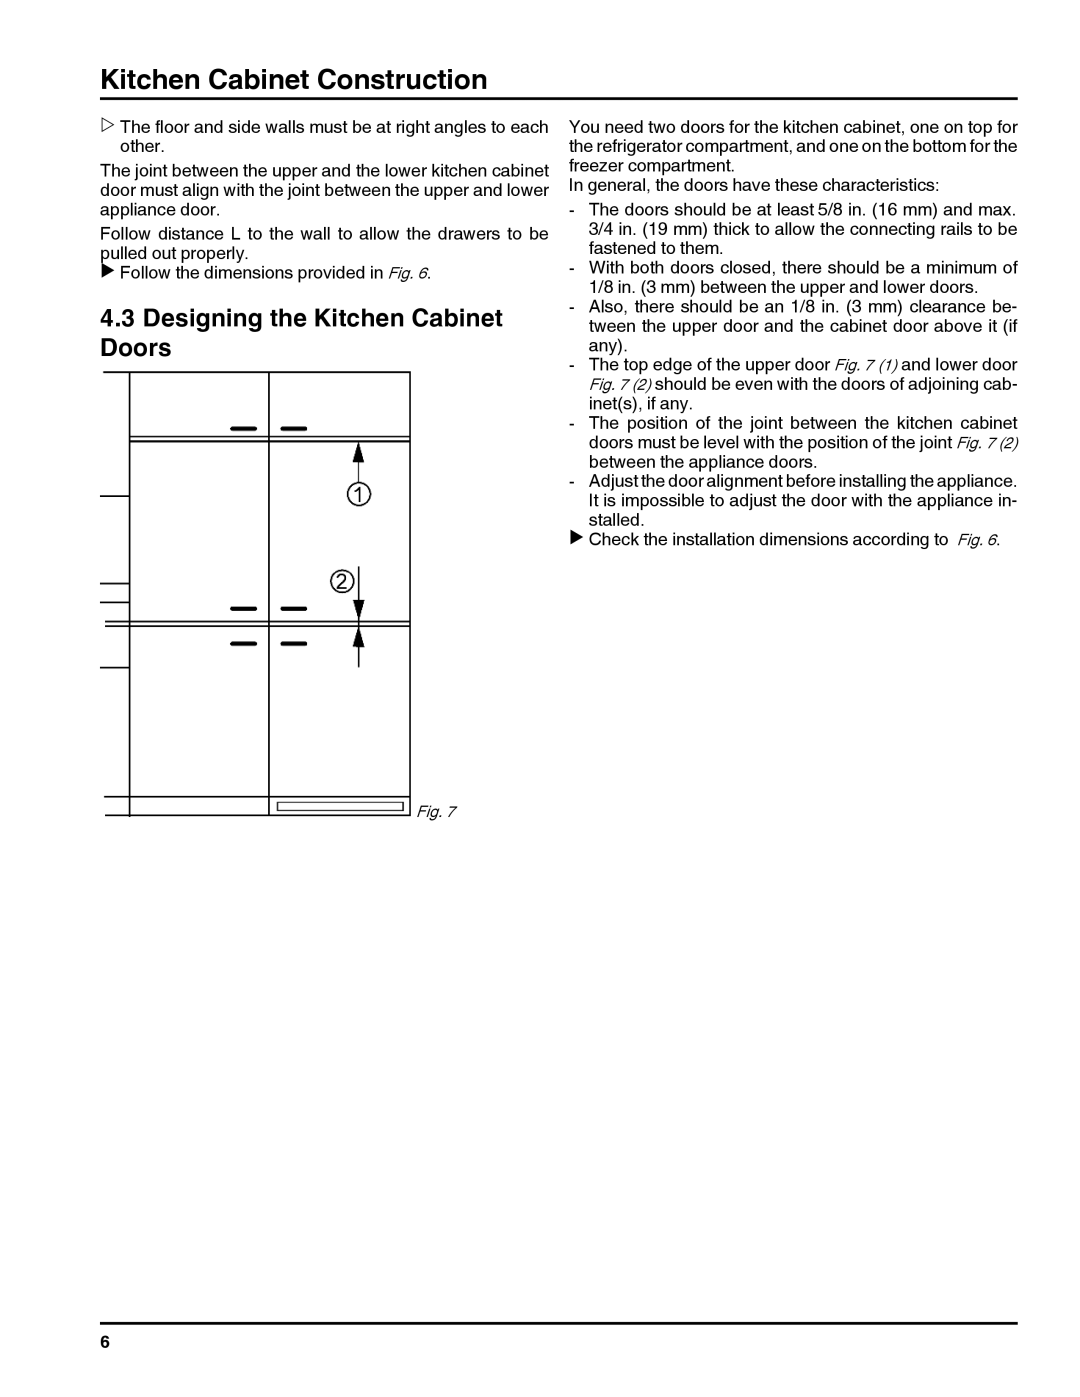 Liebherr HC1011, HC1060 installation instructions Designing the Kitchen Cabinet Doors, Kitchen Cabinet Construction 